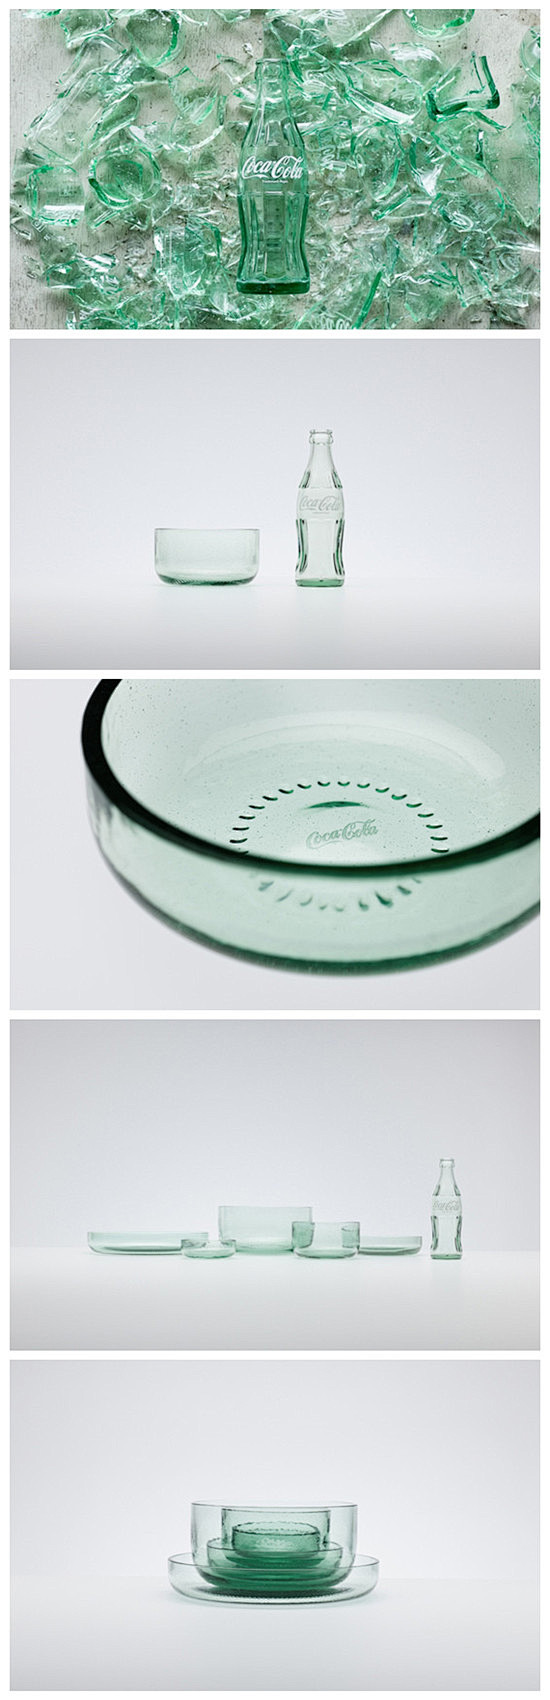 可乐瓶餐具 > 设计癖2012的东京设计...